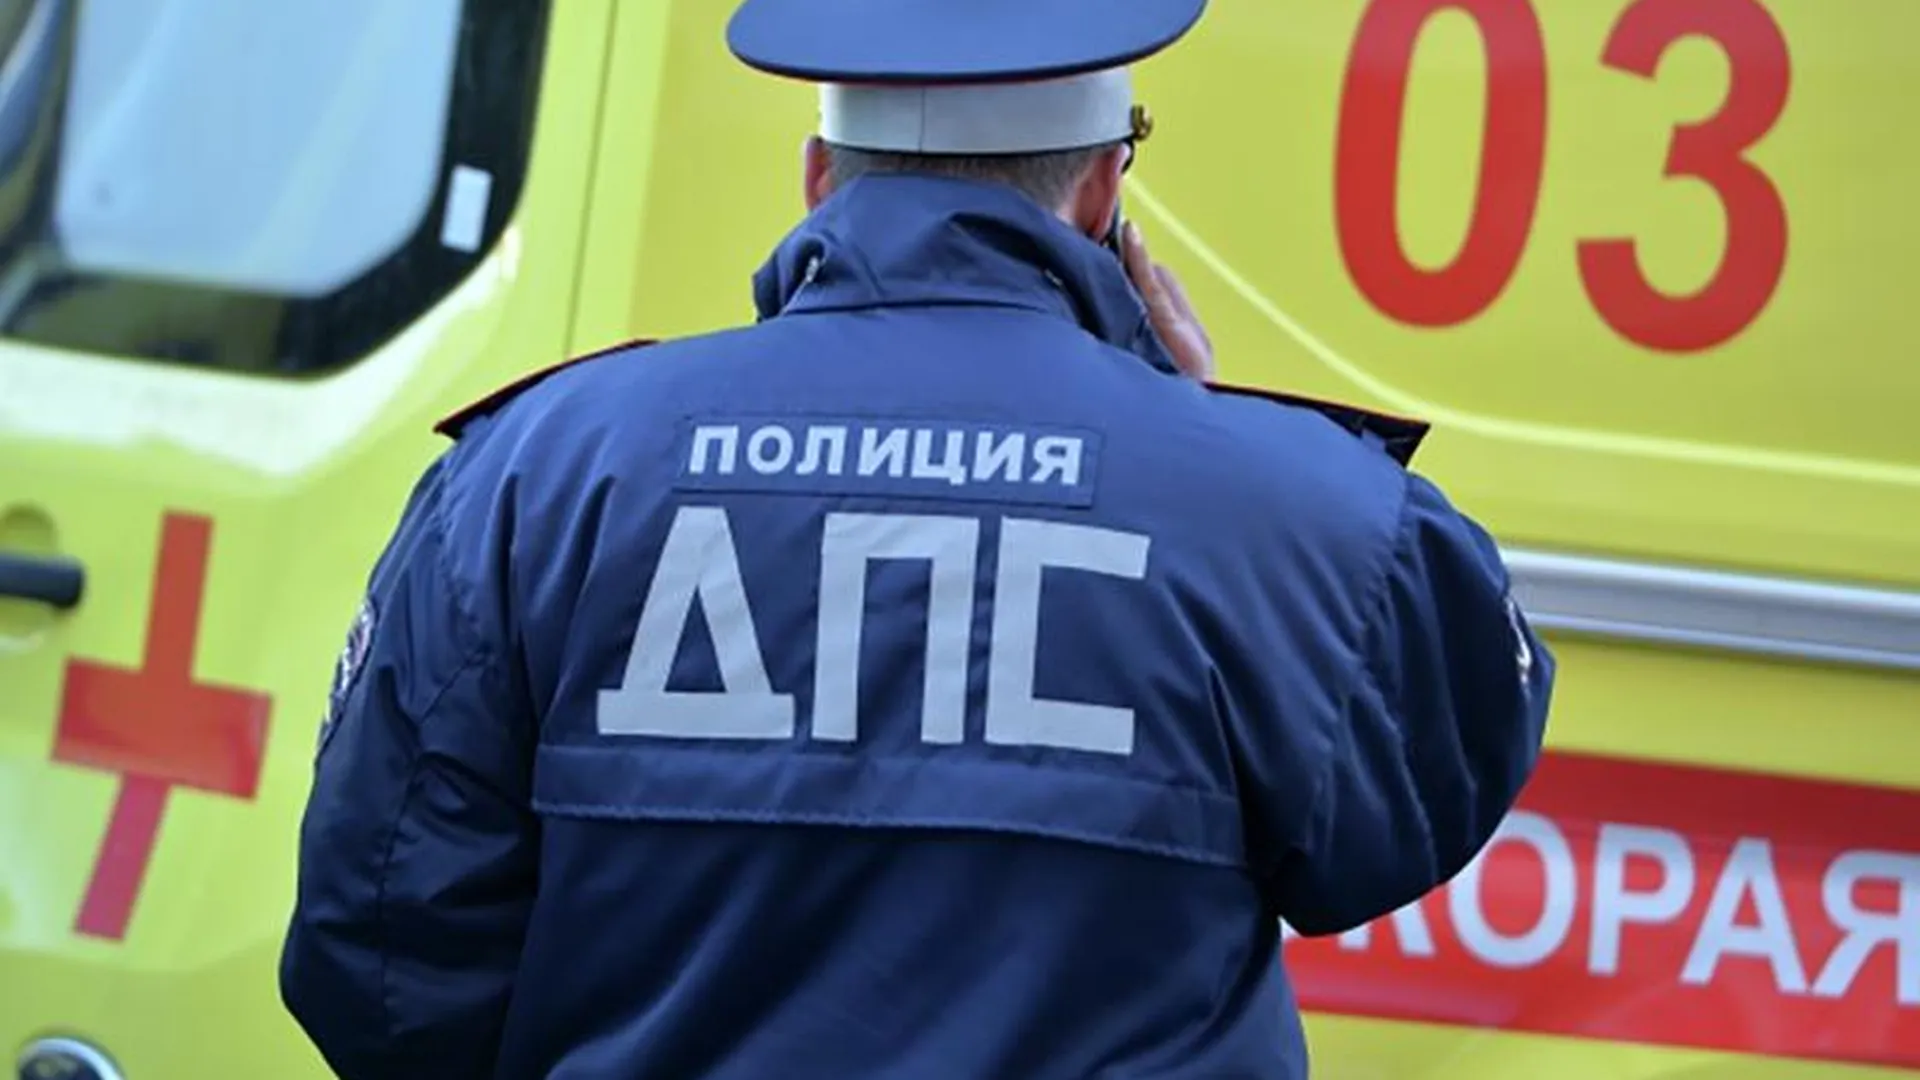 Два пассажира пострадали в результате столкновения автобуса и фуры в Подмосковье 